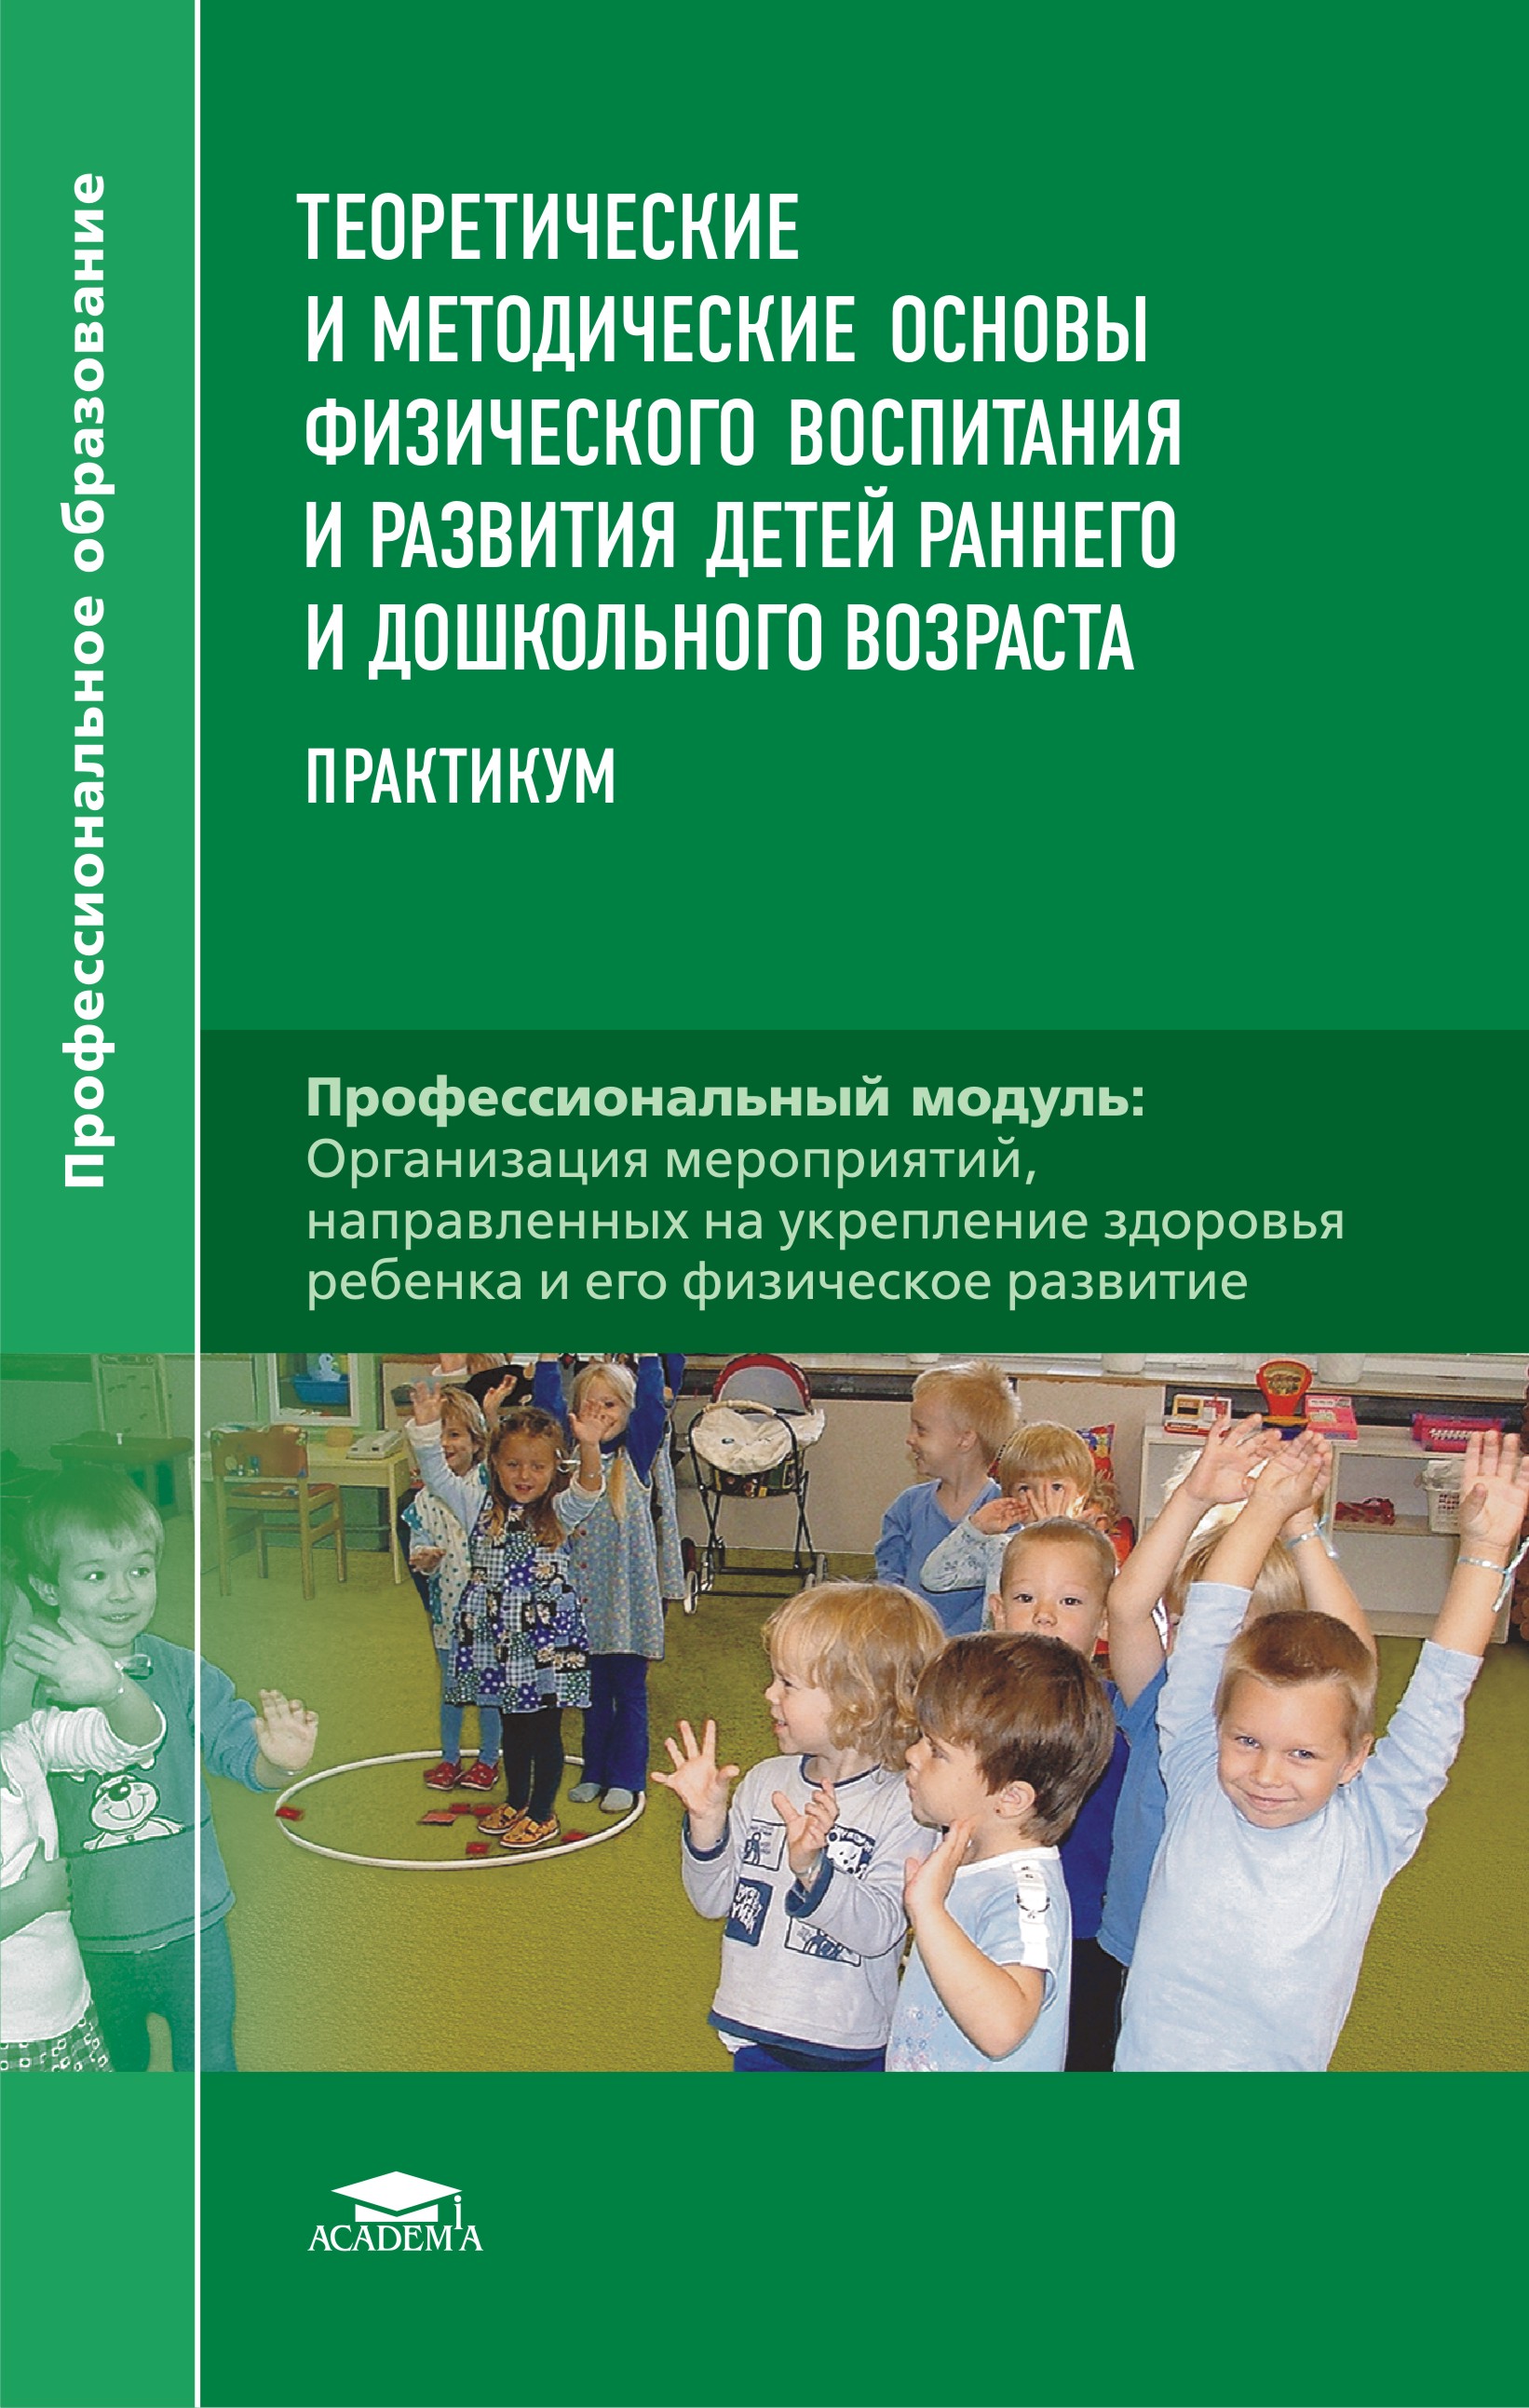 Теоретические и методические основы физического воспитания и развития детей раннего и дошкольного возраста. Практикум